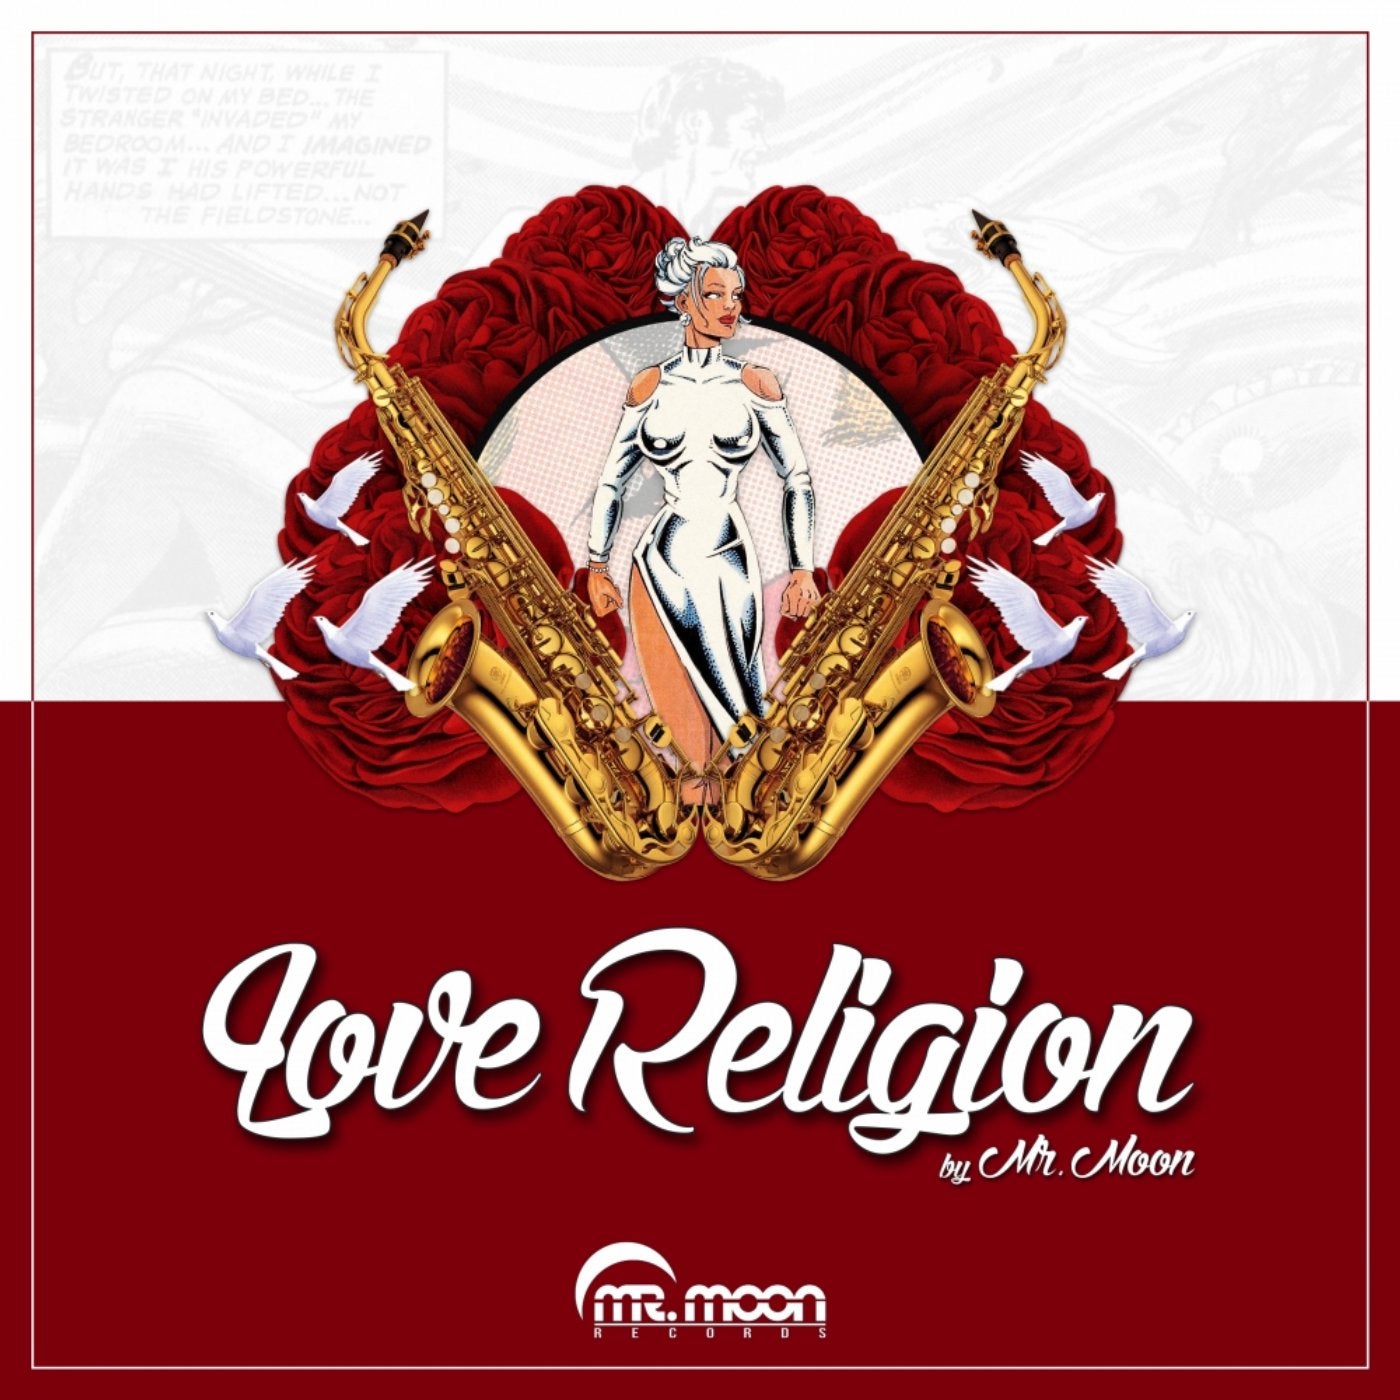 Love Religion